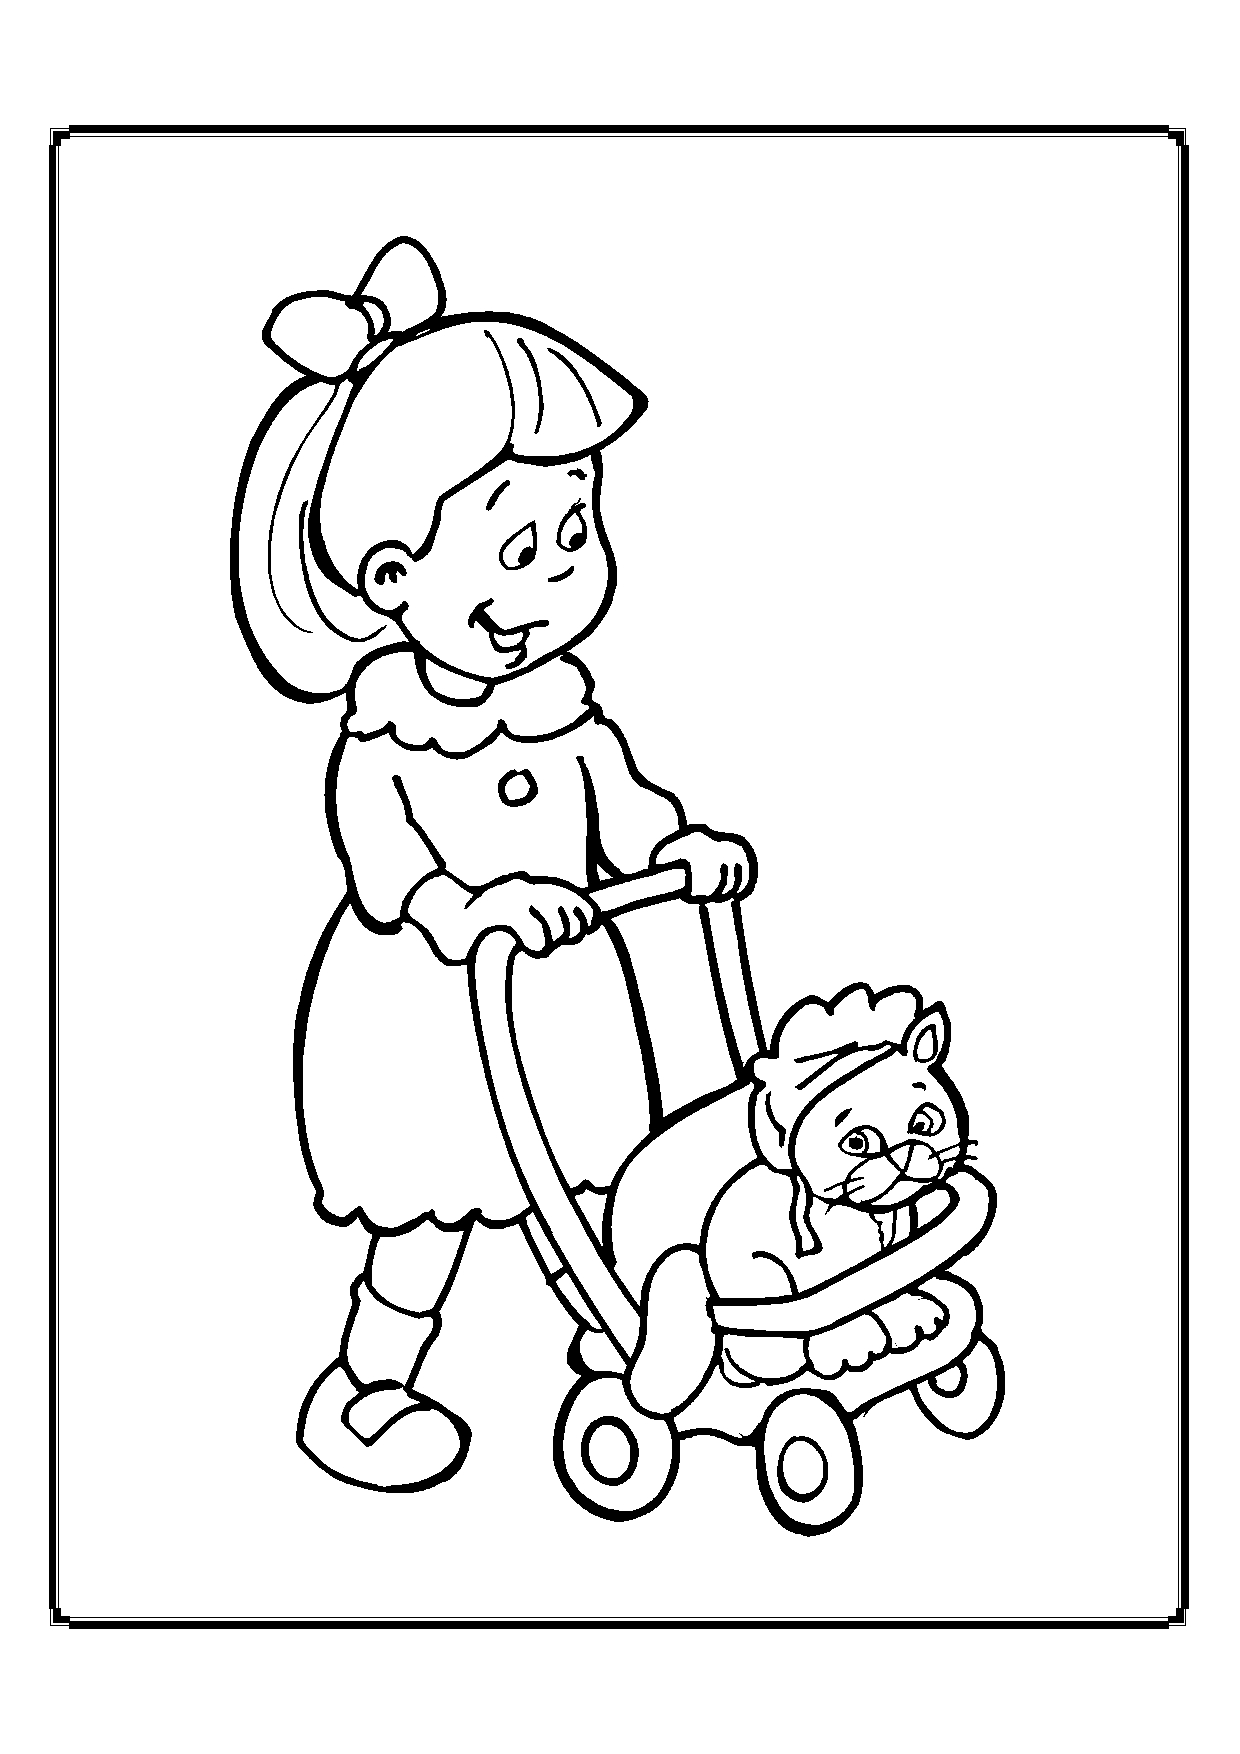 Kolorowanka kot smutny siedzi w czepku w wózeczku dla dzieci pchanego przez młodą dziewczynkę